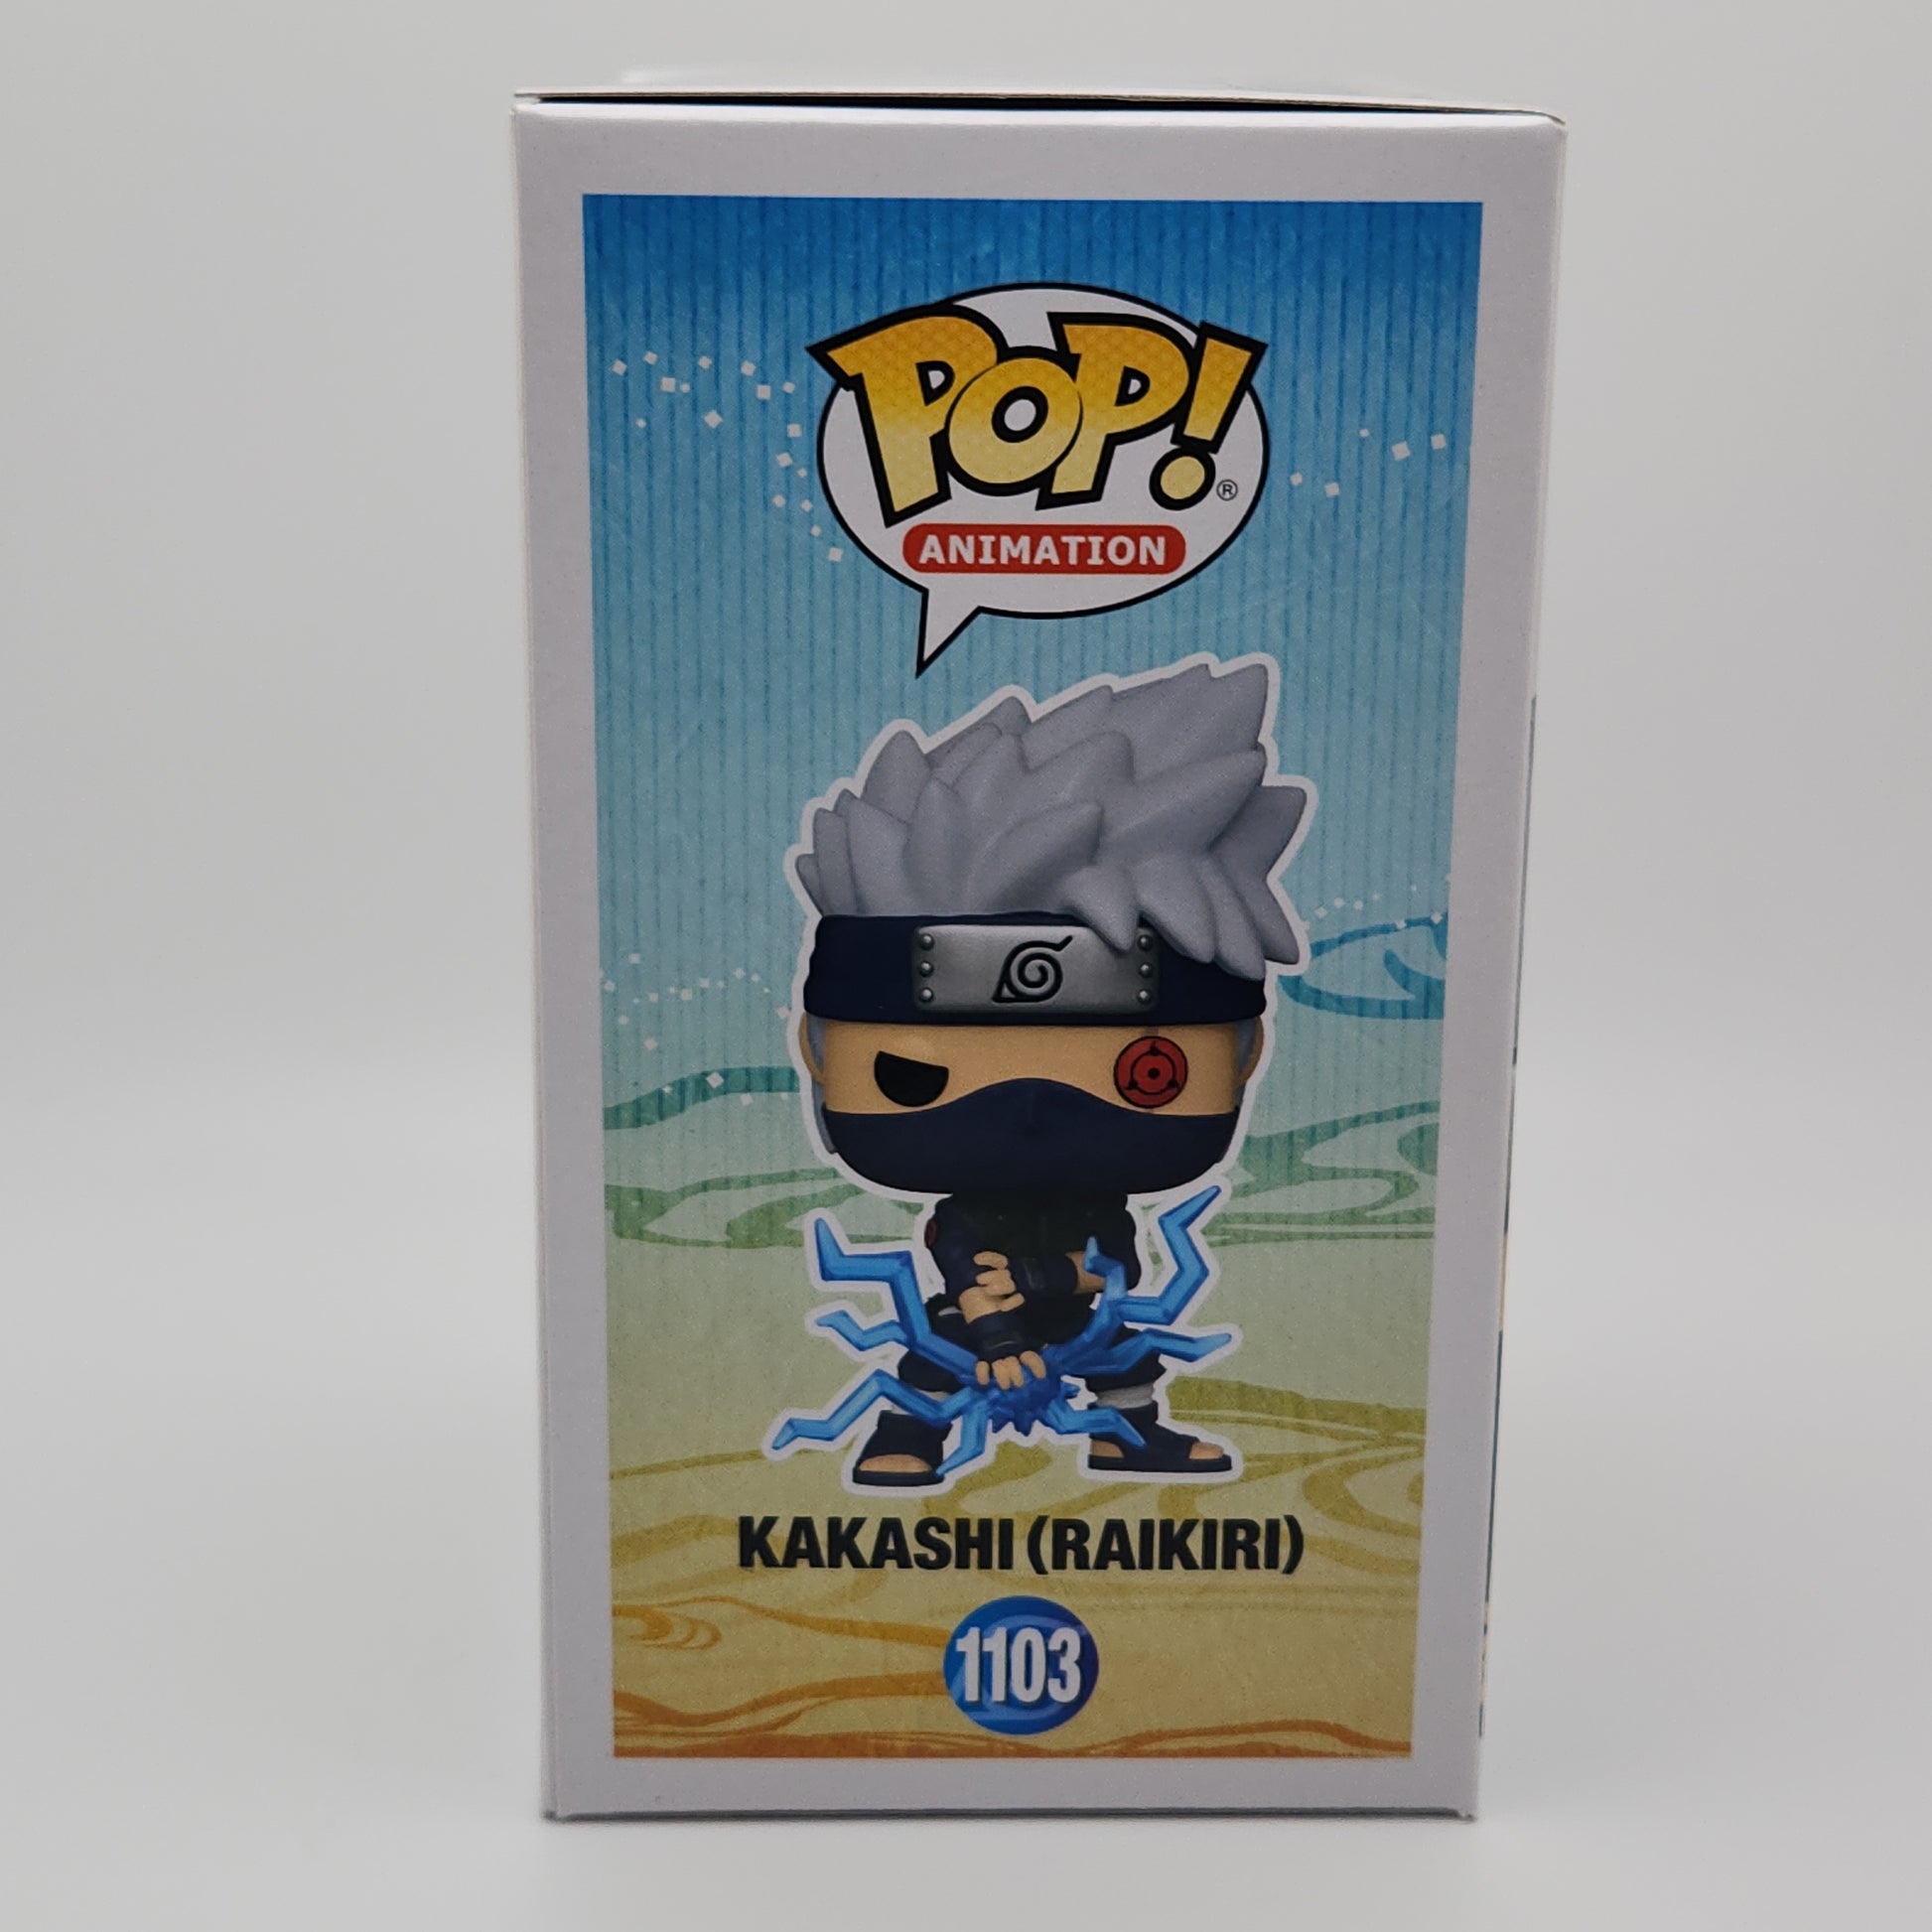 Funko Pop! Animation #1103 - Kakashi (Raikiri) - Naruto Shippuden